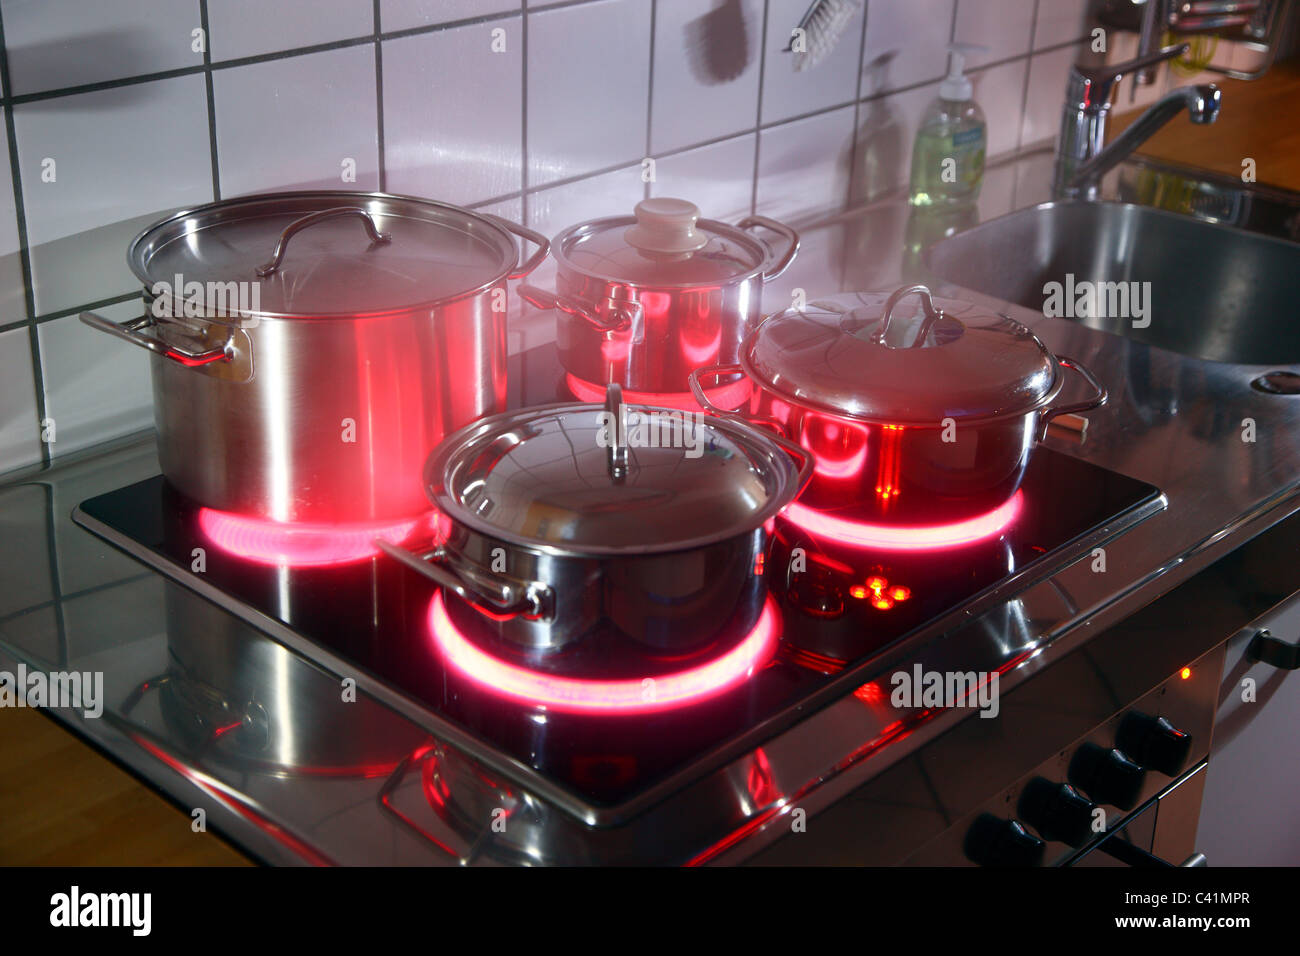 Cucina casalinga, pentole, realizzata in acciaio inossidabile, su di un vetro caldo-cottura ceramica anello. red hot incandescente. Foto Stock